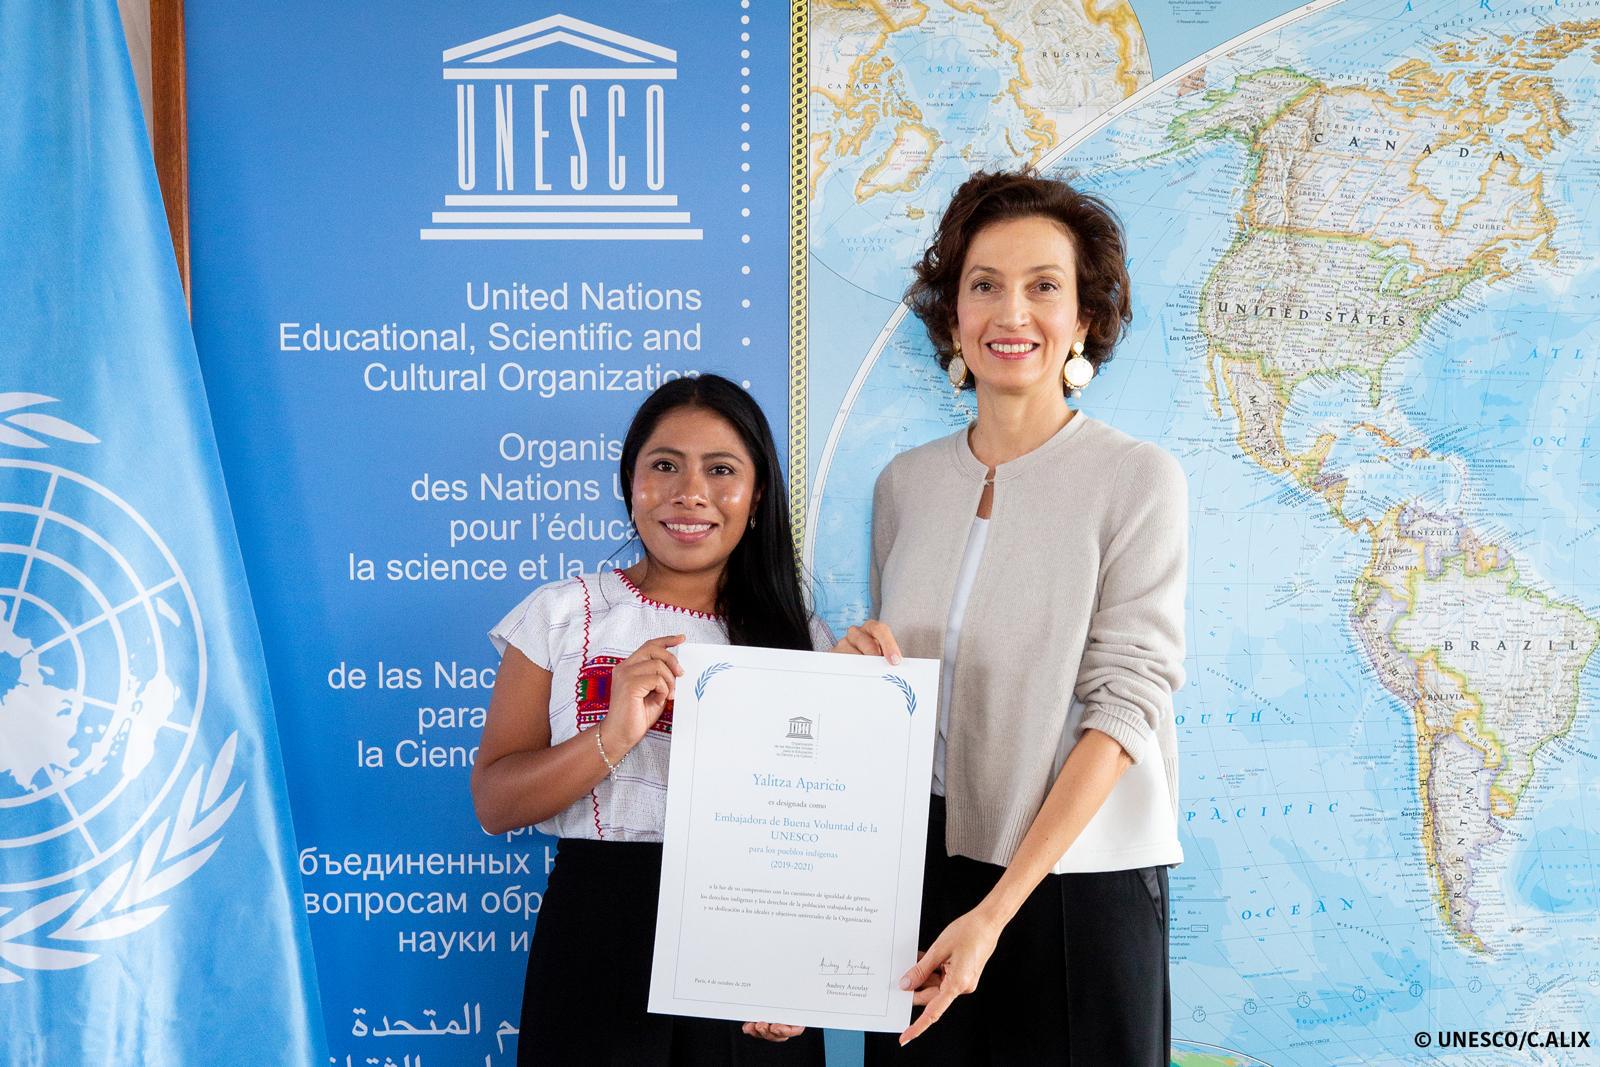 Photo of Nombran embajadora de buena voluntad de la Unesco a Yalitza Aparicio